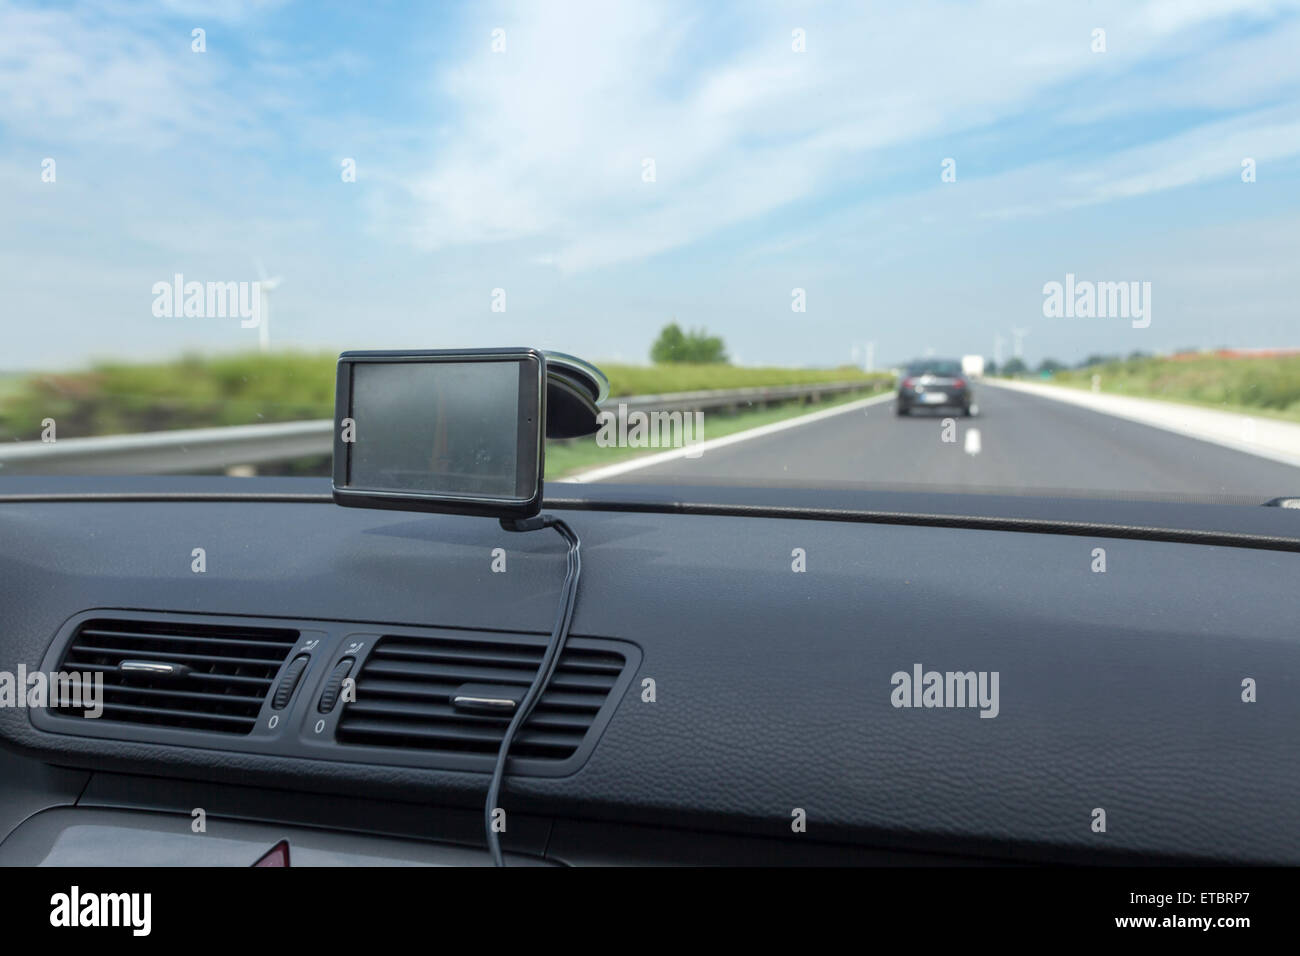 Armaturen in einem Auto, Autoradio, Navigationssystem, Lüftung Stock Photo